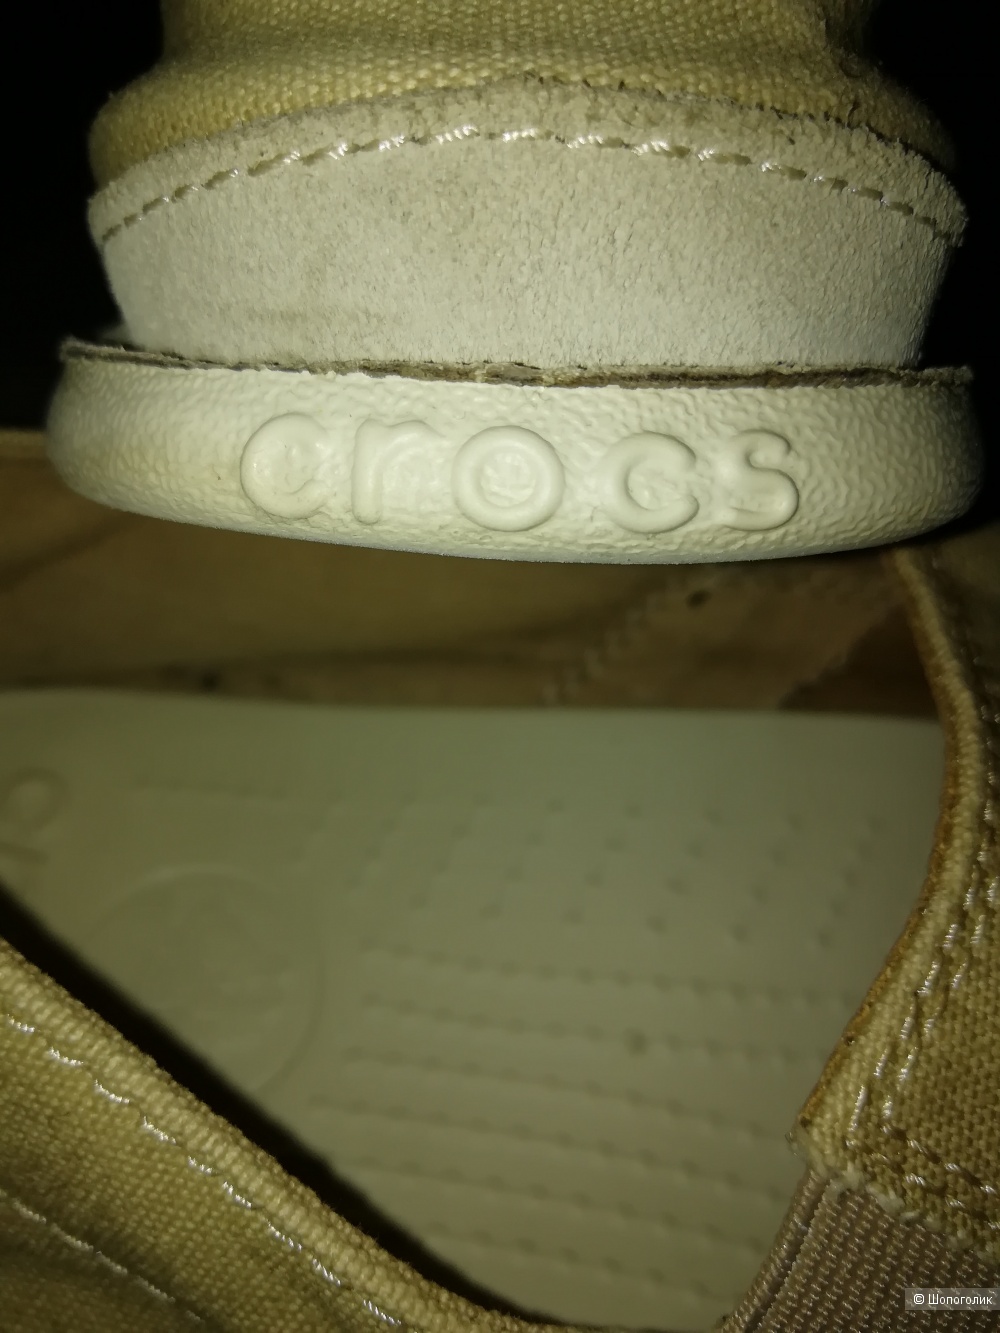 Мужская обувь мокасины/слипоны Crocs , размер uk 8